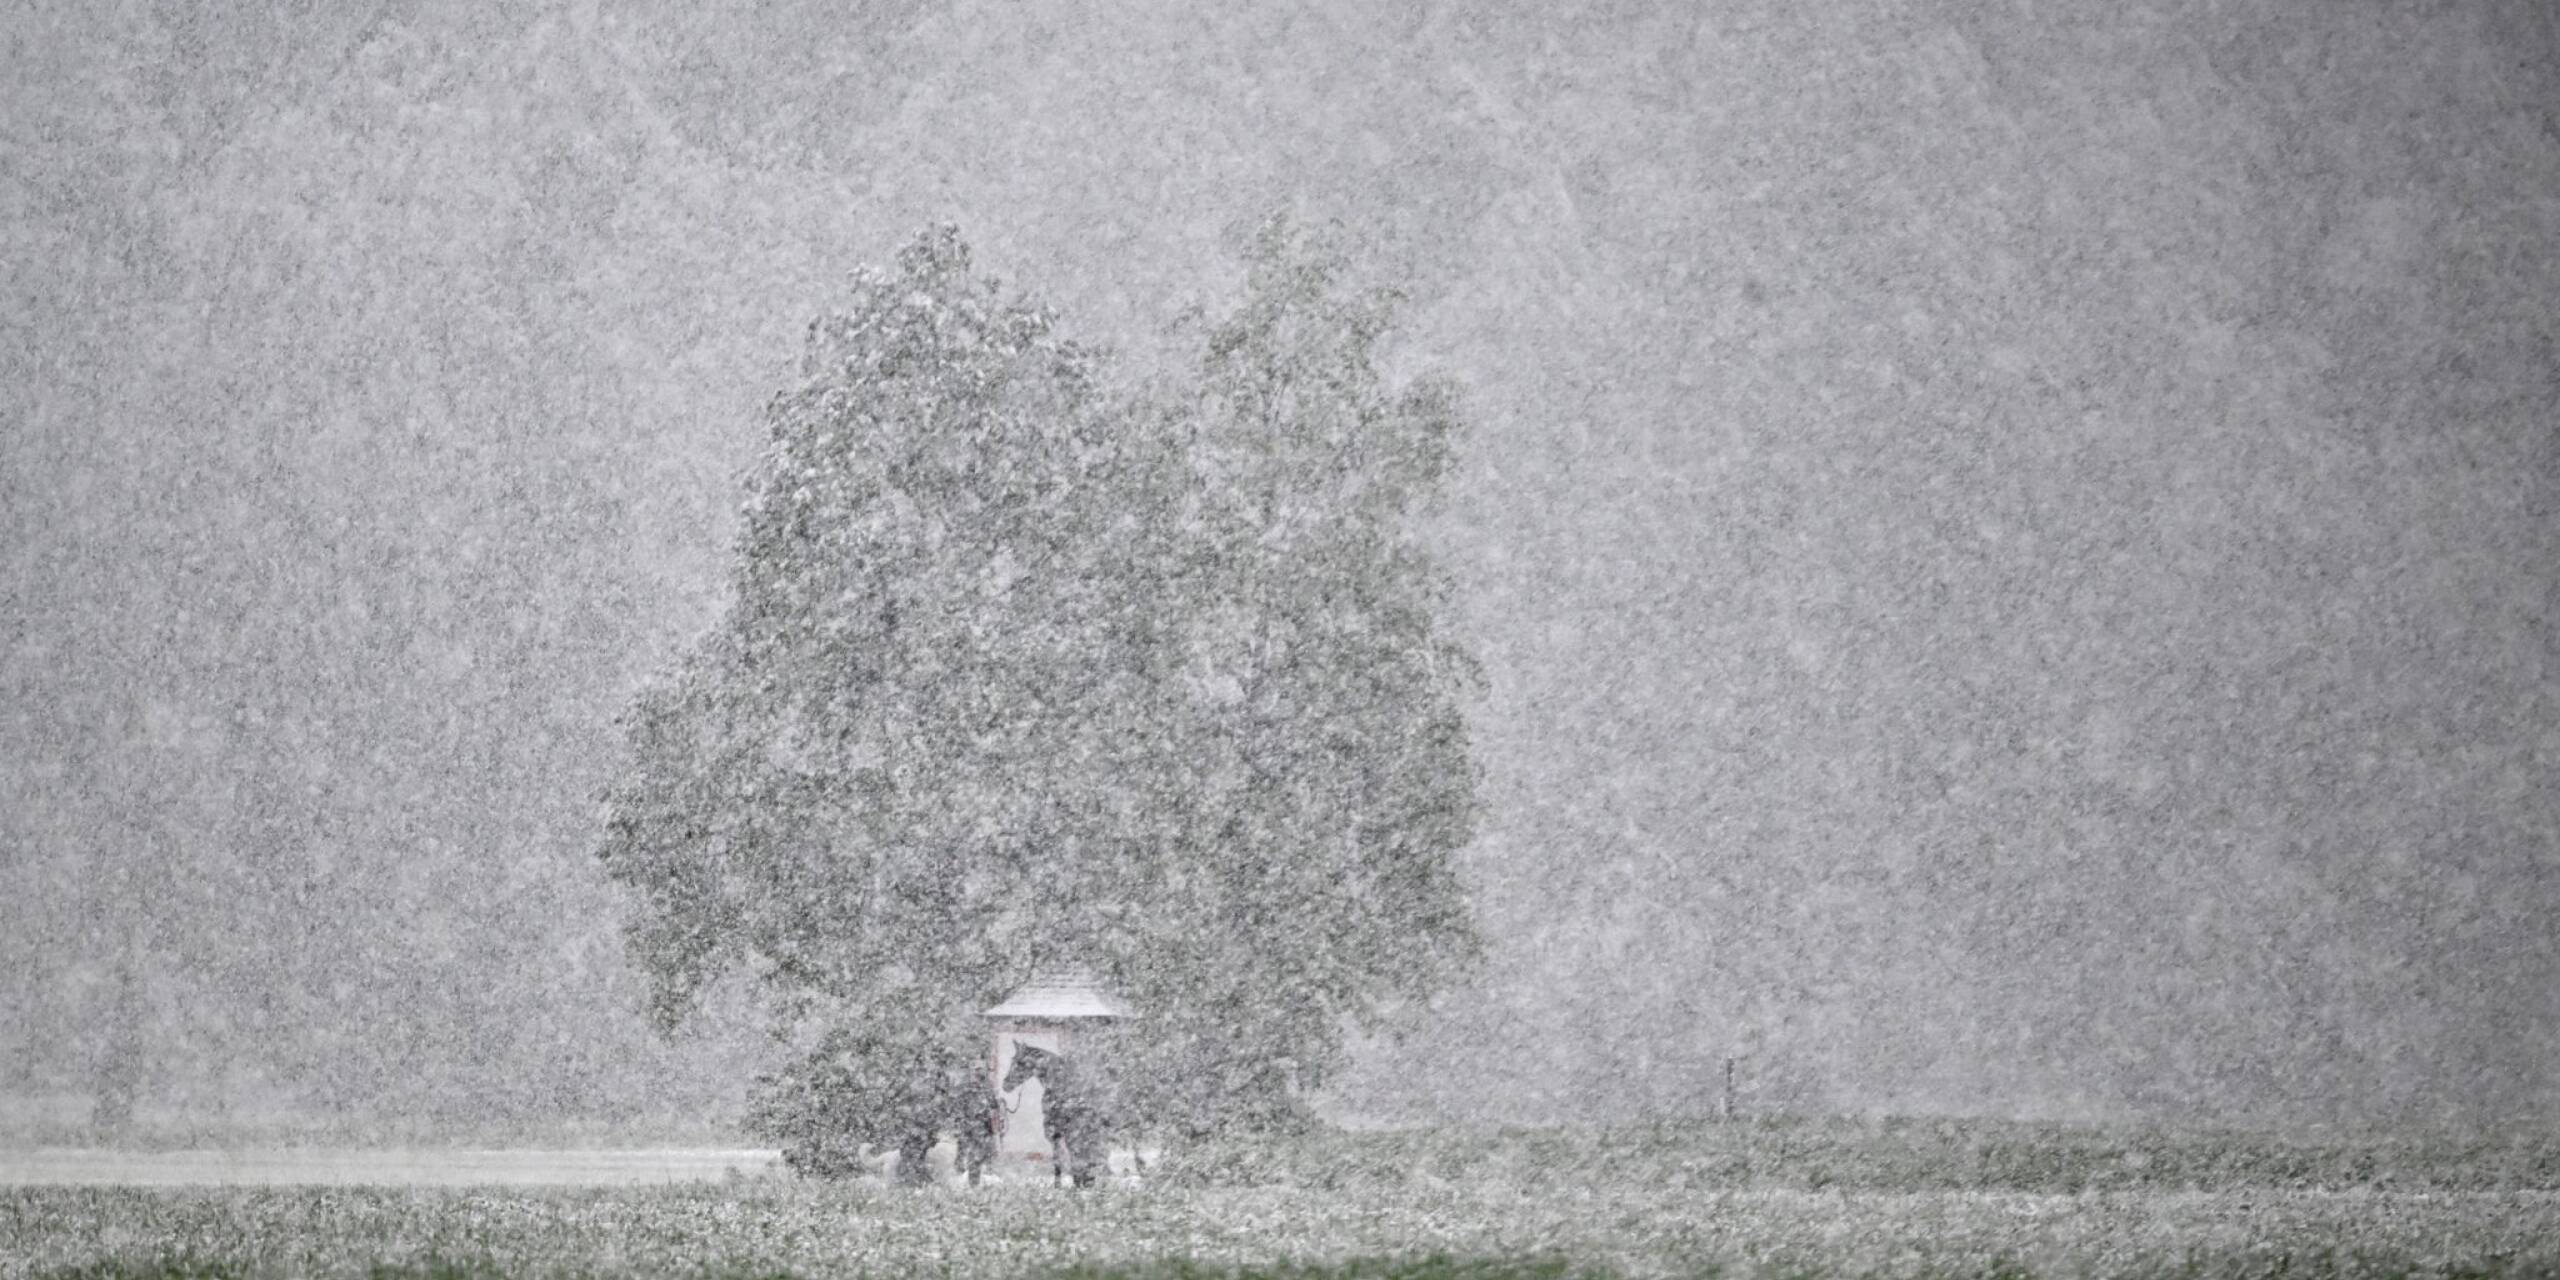 Der Winter ist zurück - auch in Österreich. Ein Reiter und sein Pferd sind bei dichtem Schneefall nur schemenhaft zu erkennen.